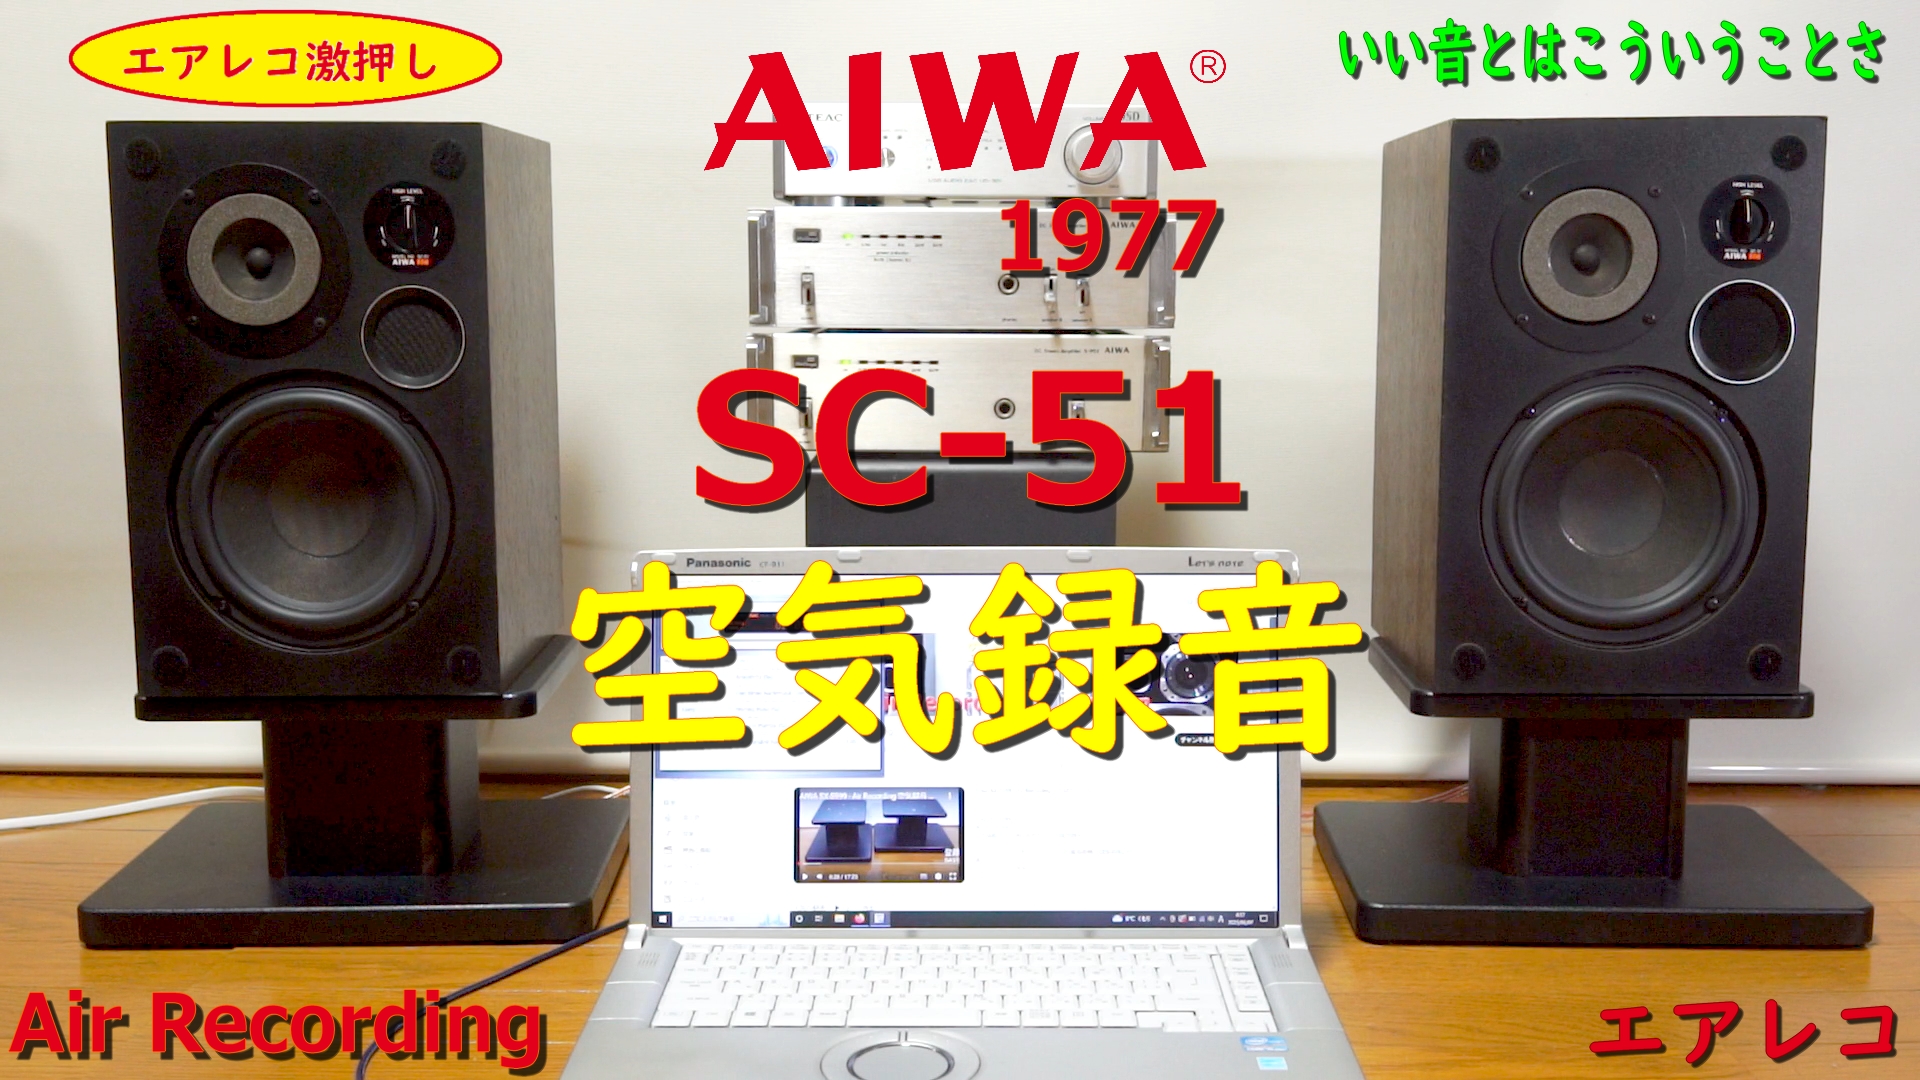 AIWA SC – Air Recording 空気録音 みんな大好きえすしーごー